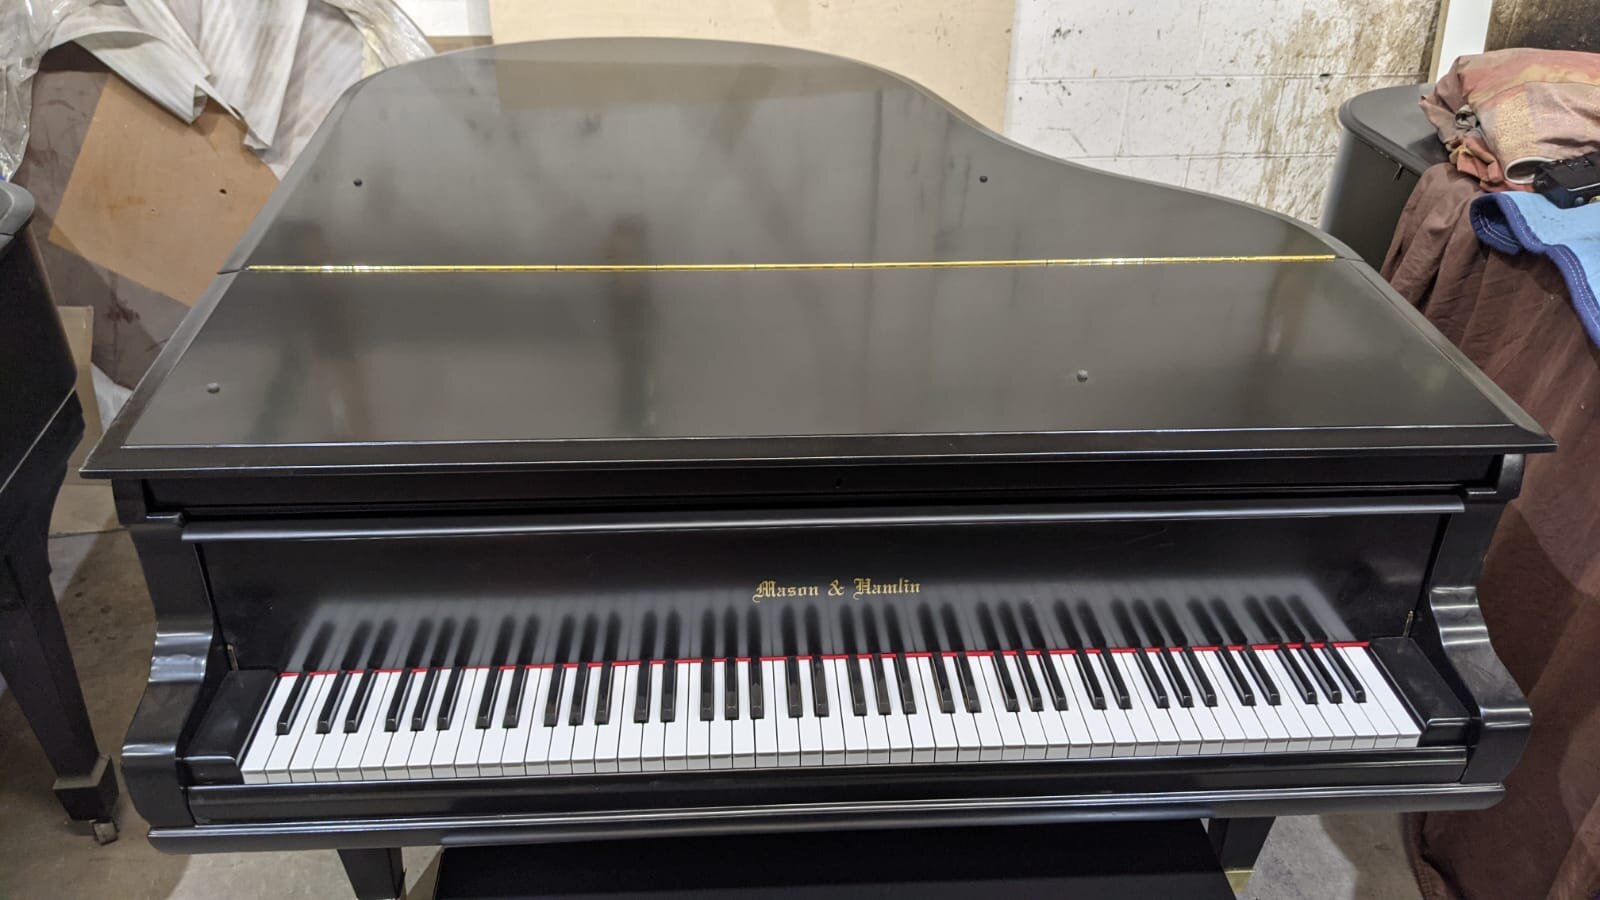 Mason & Hamlin baby grand piano for sale 7.jpeg